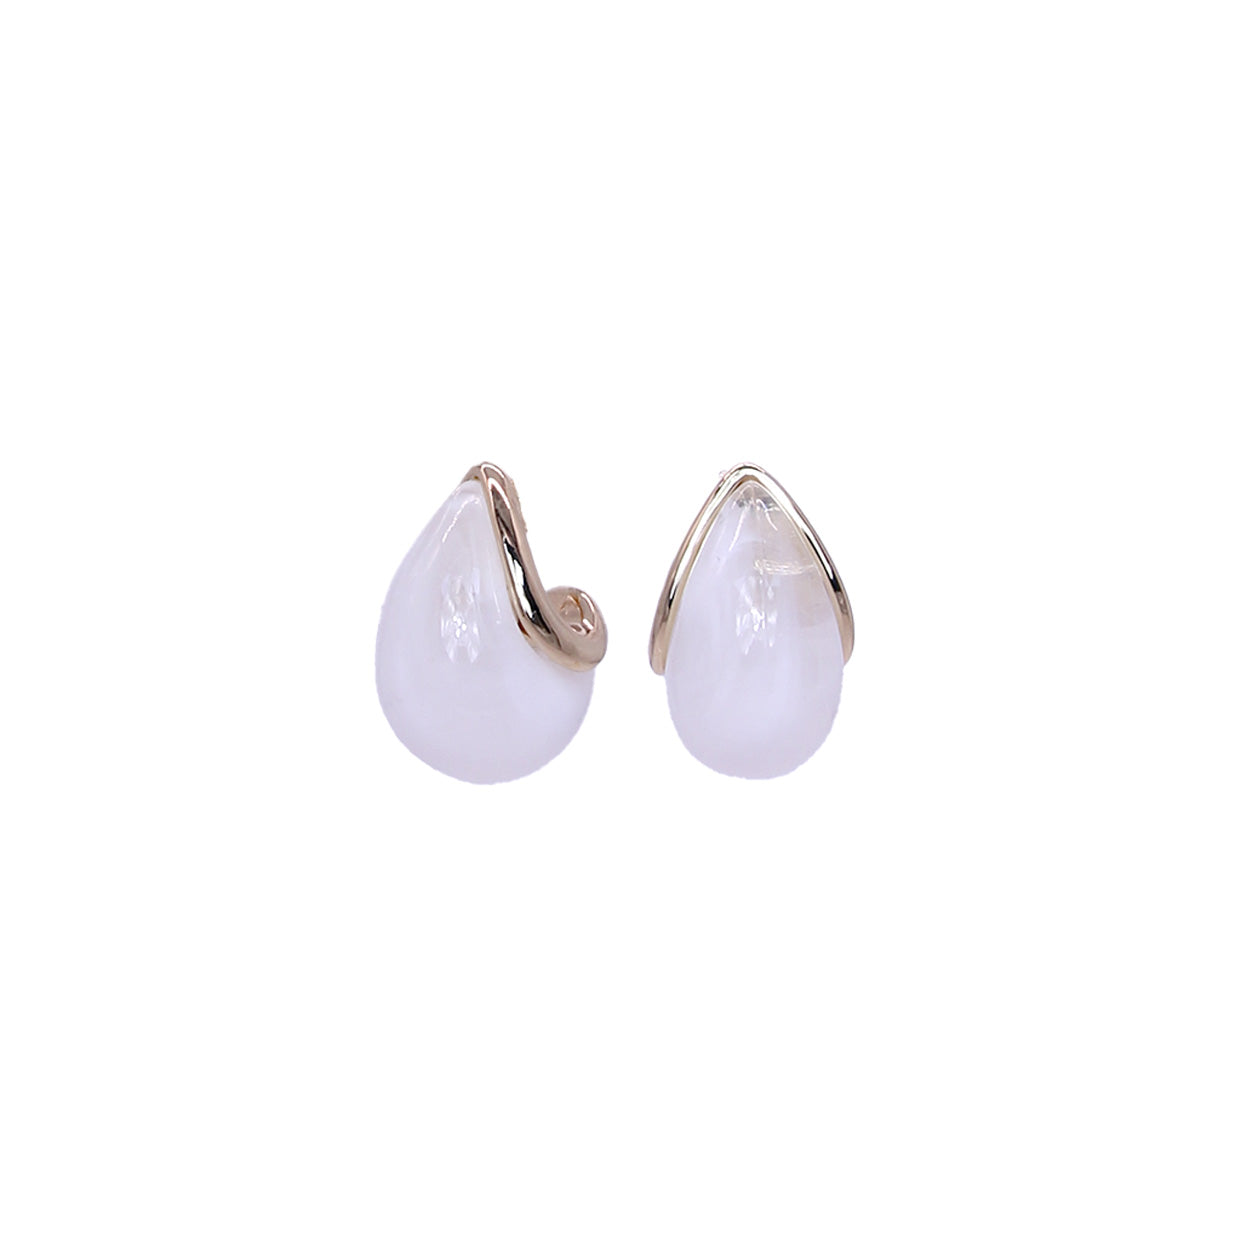 Marble teardrop earring